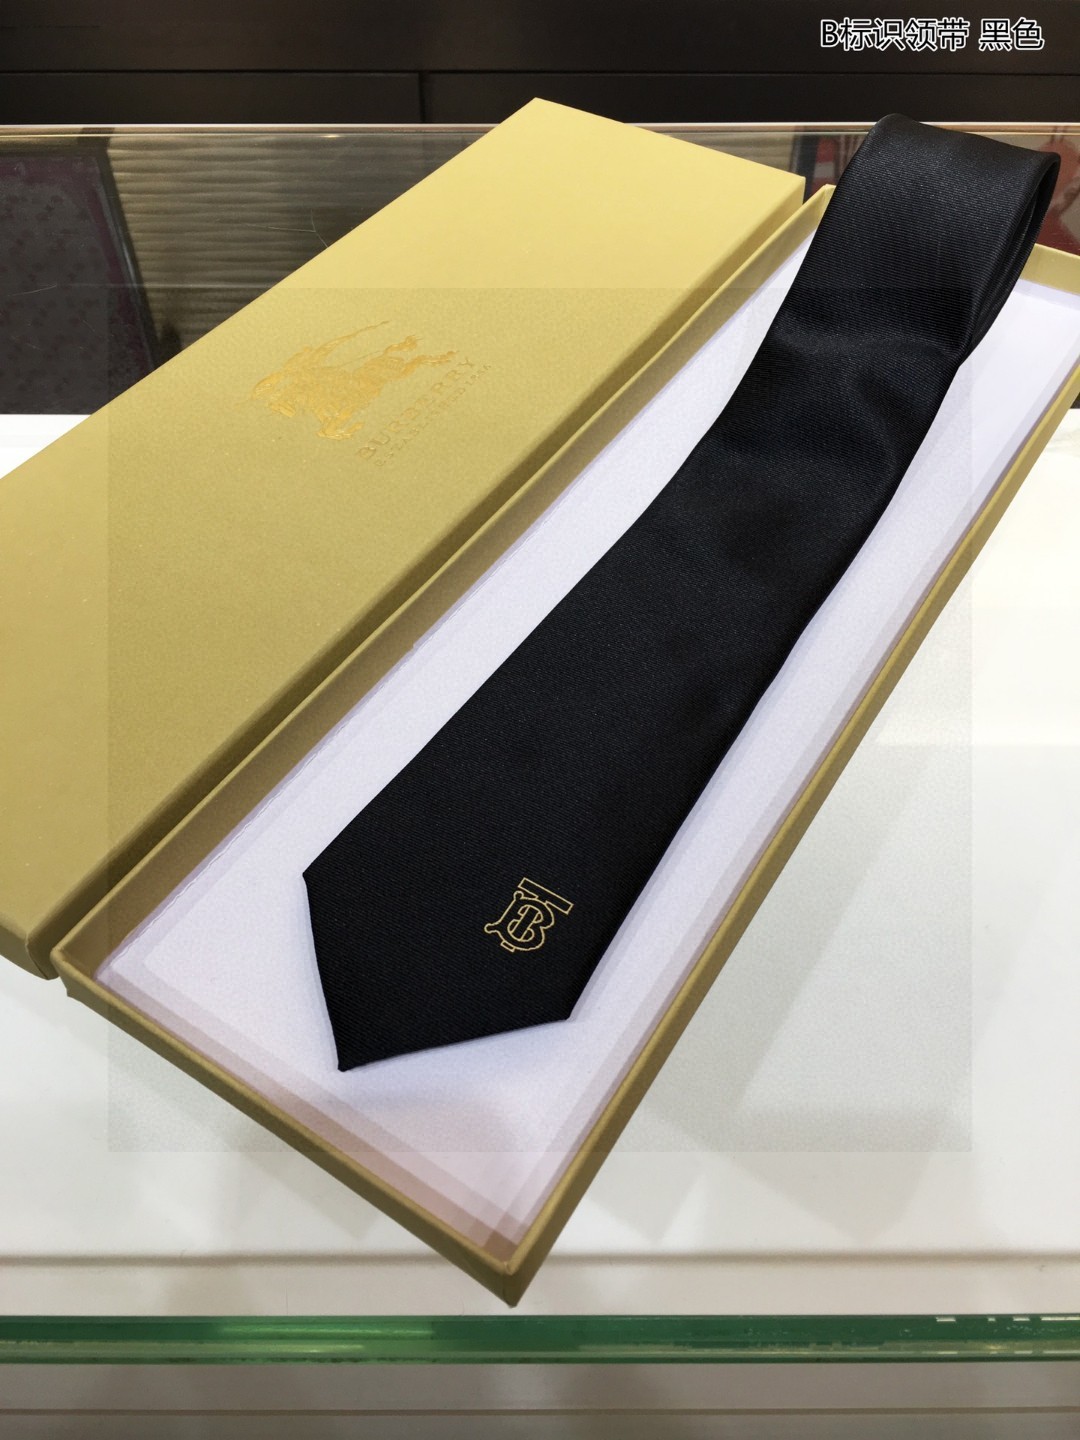 B家新款领带特价男士B标识领带稀有展现精湛手工与时尚优雅的理想选择这款采用B家最具标志性字母标示LOGO